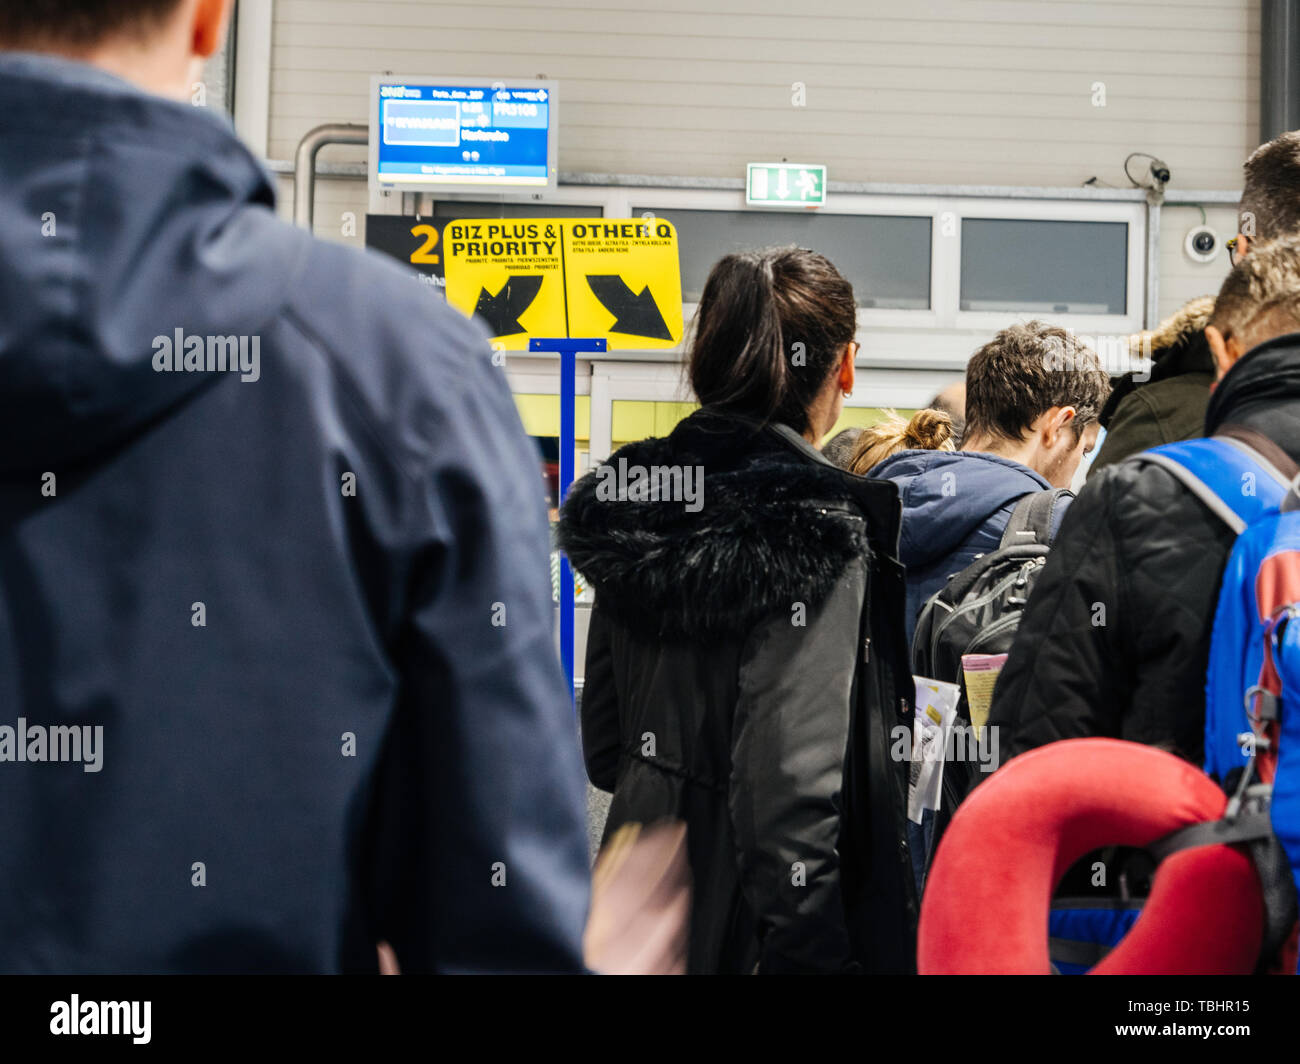 Lissabon, Portugal - Feb 11, 2018: Ansicht der Rückseite des Menschen in der Warteschlange in der modernen Flughafen warten auf das Boarding zu Ryanair destination grosses Plus und Vorrang beim Boarding Stockfoto